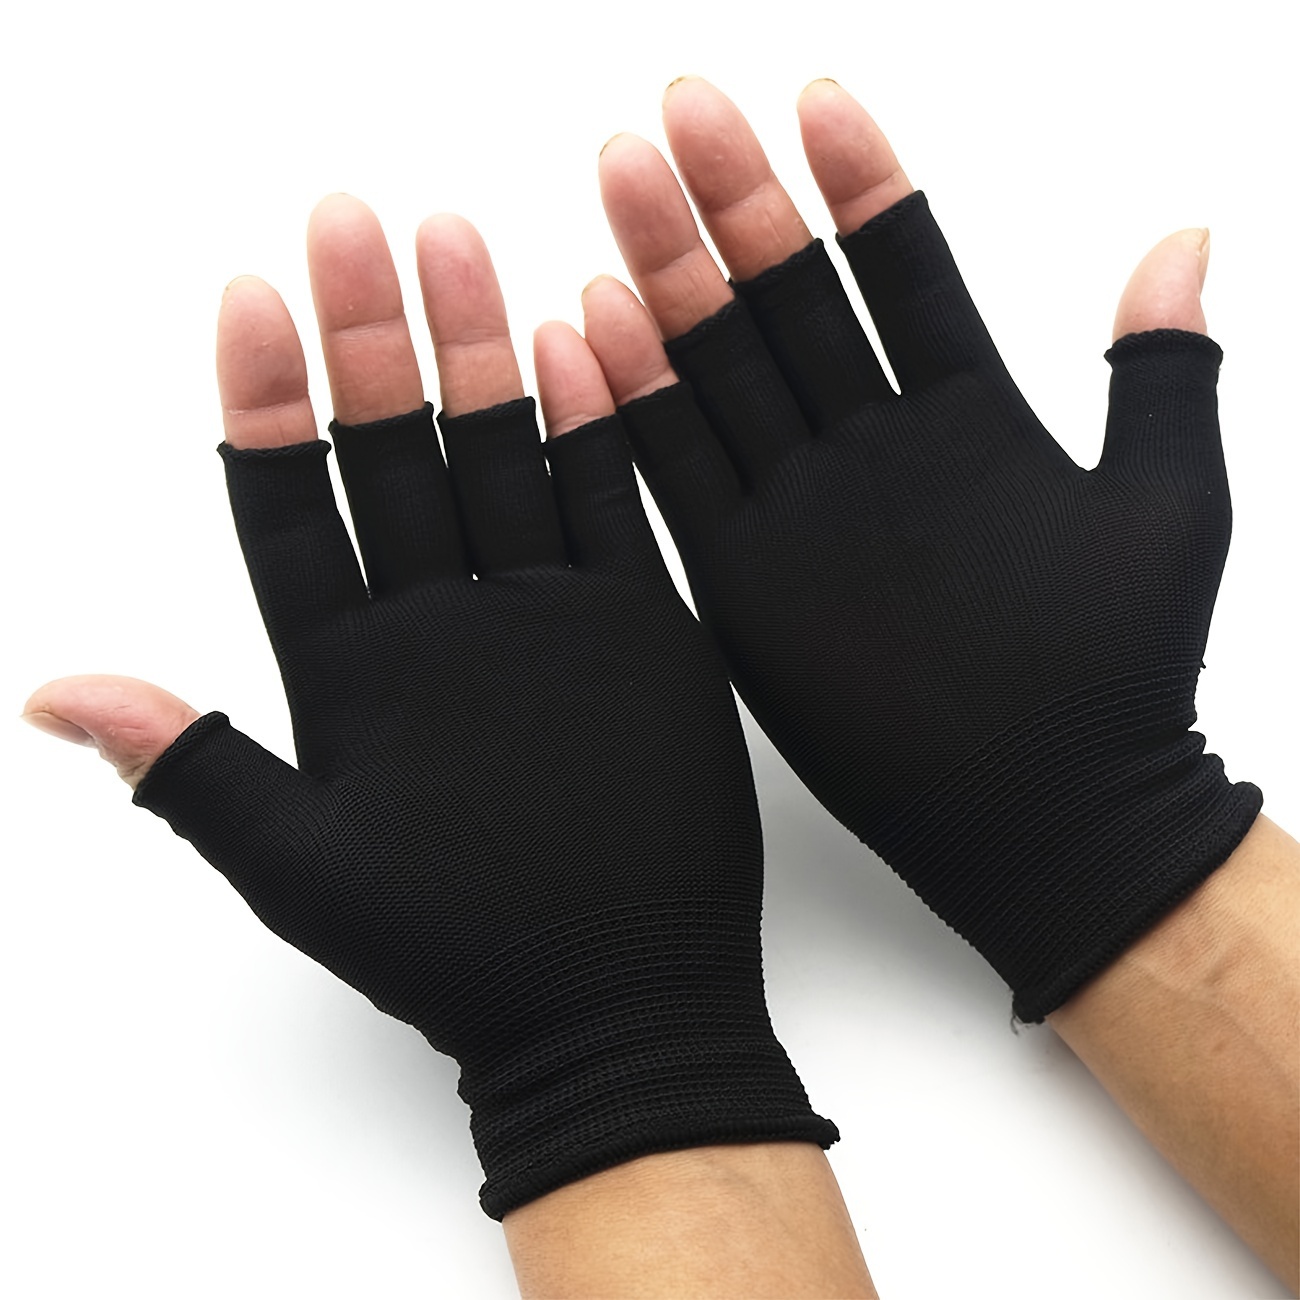 

5pair Half Finger Fingerless Gloves For Women And Men Wool Knit Wrist Cotton Gloves